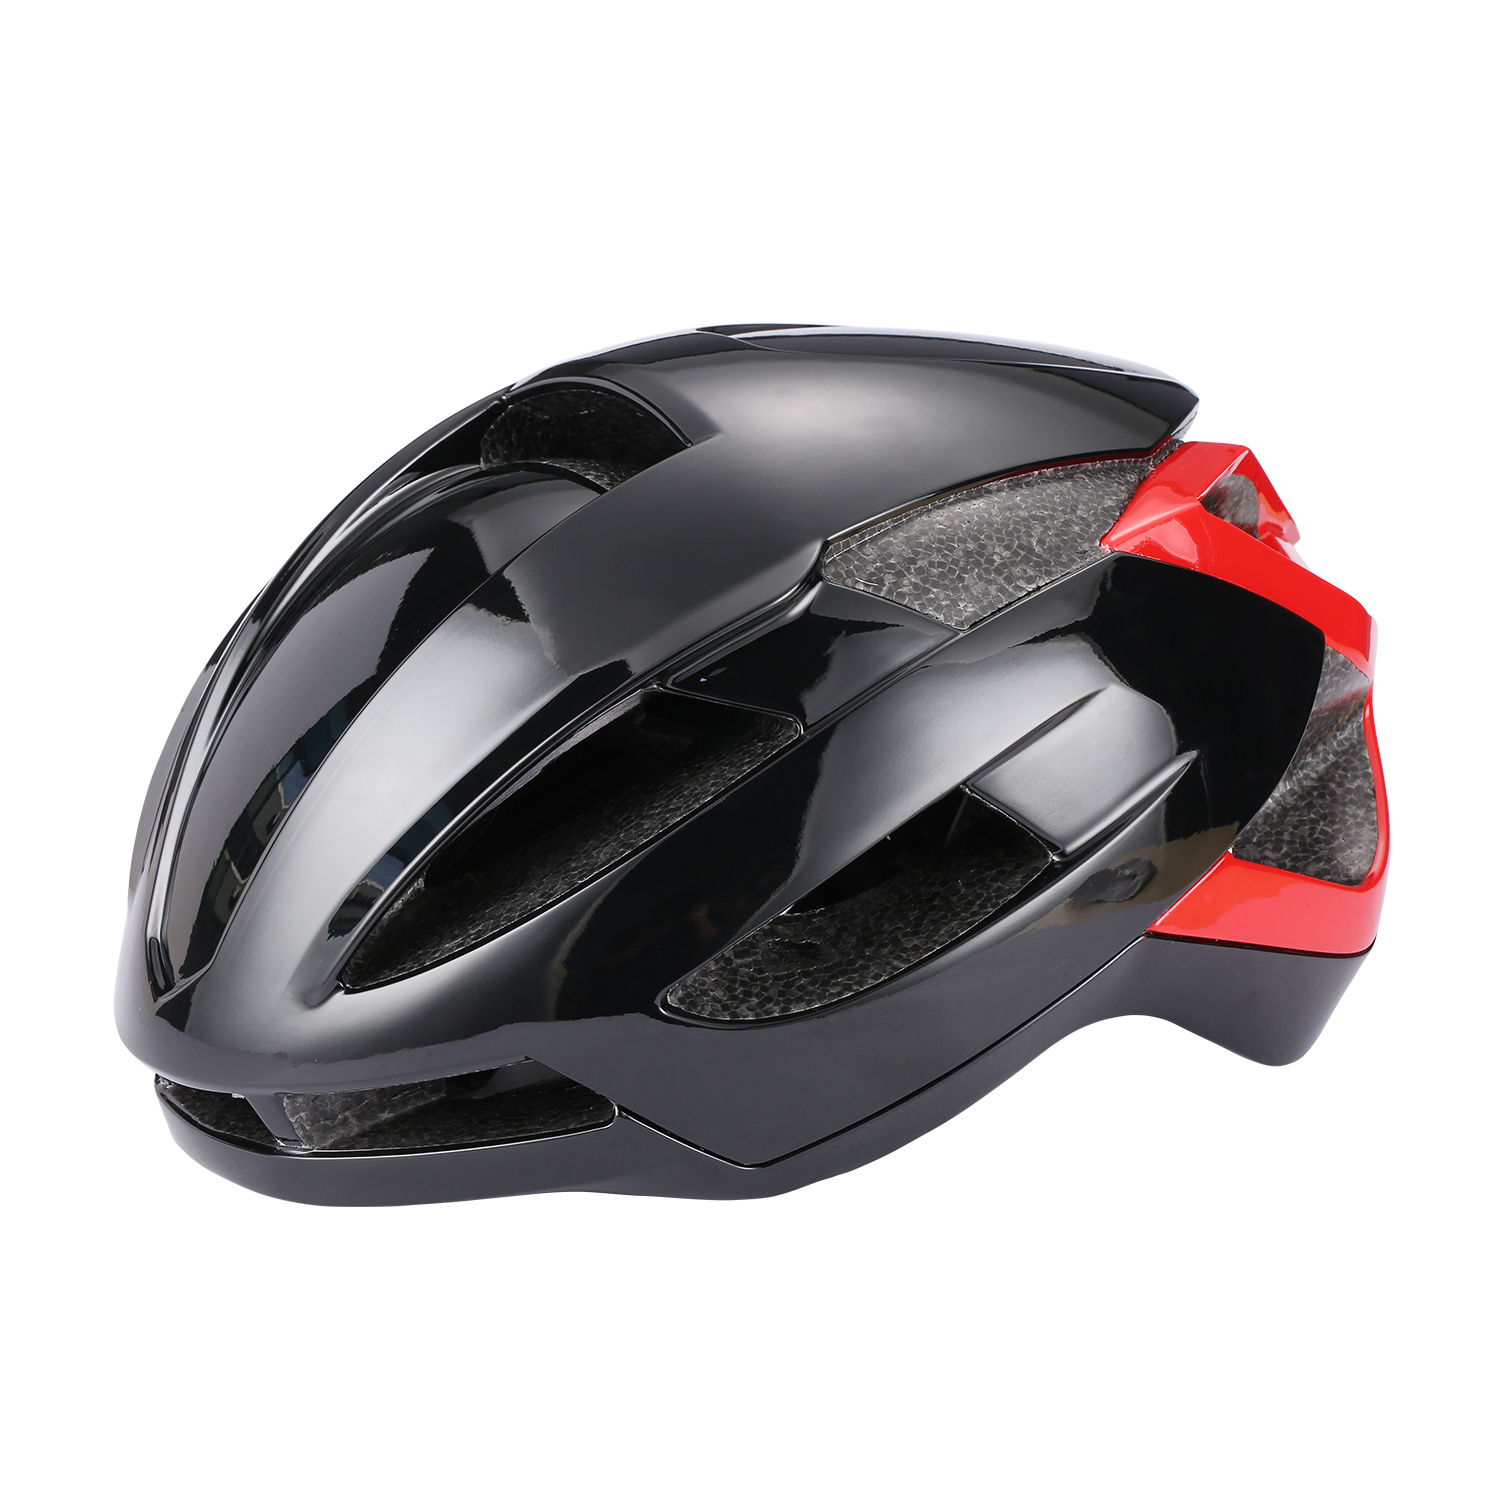 G02 Road Bike Helmet